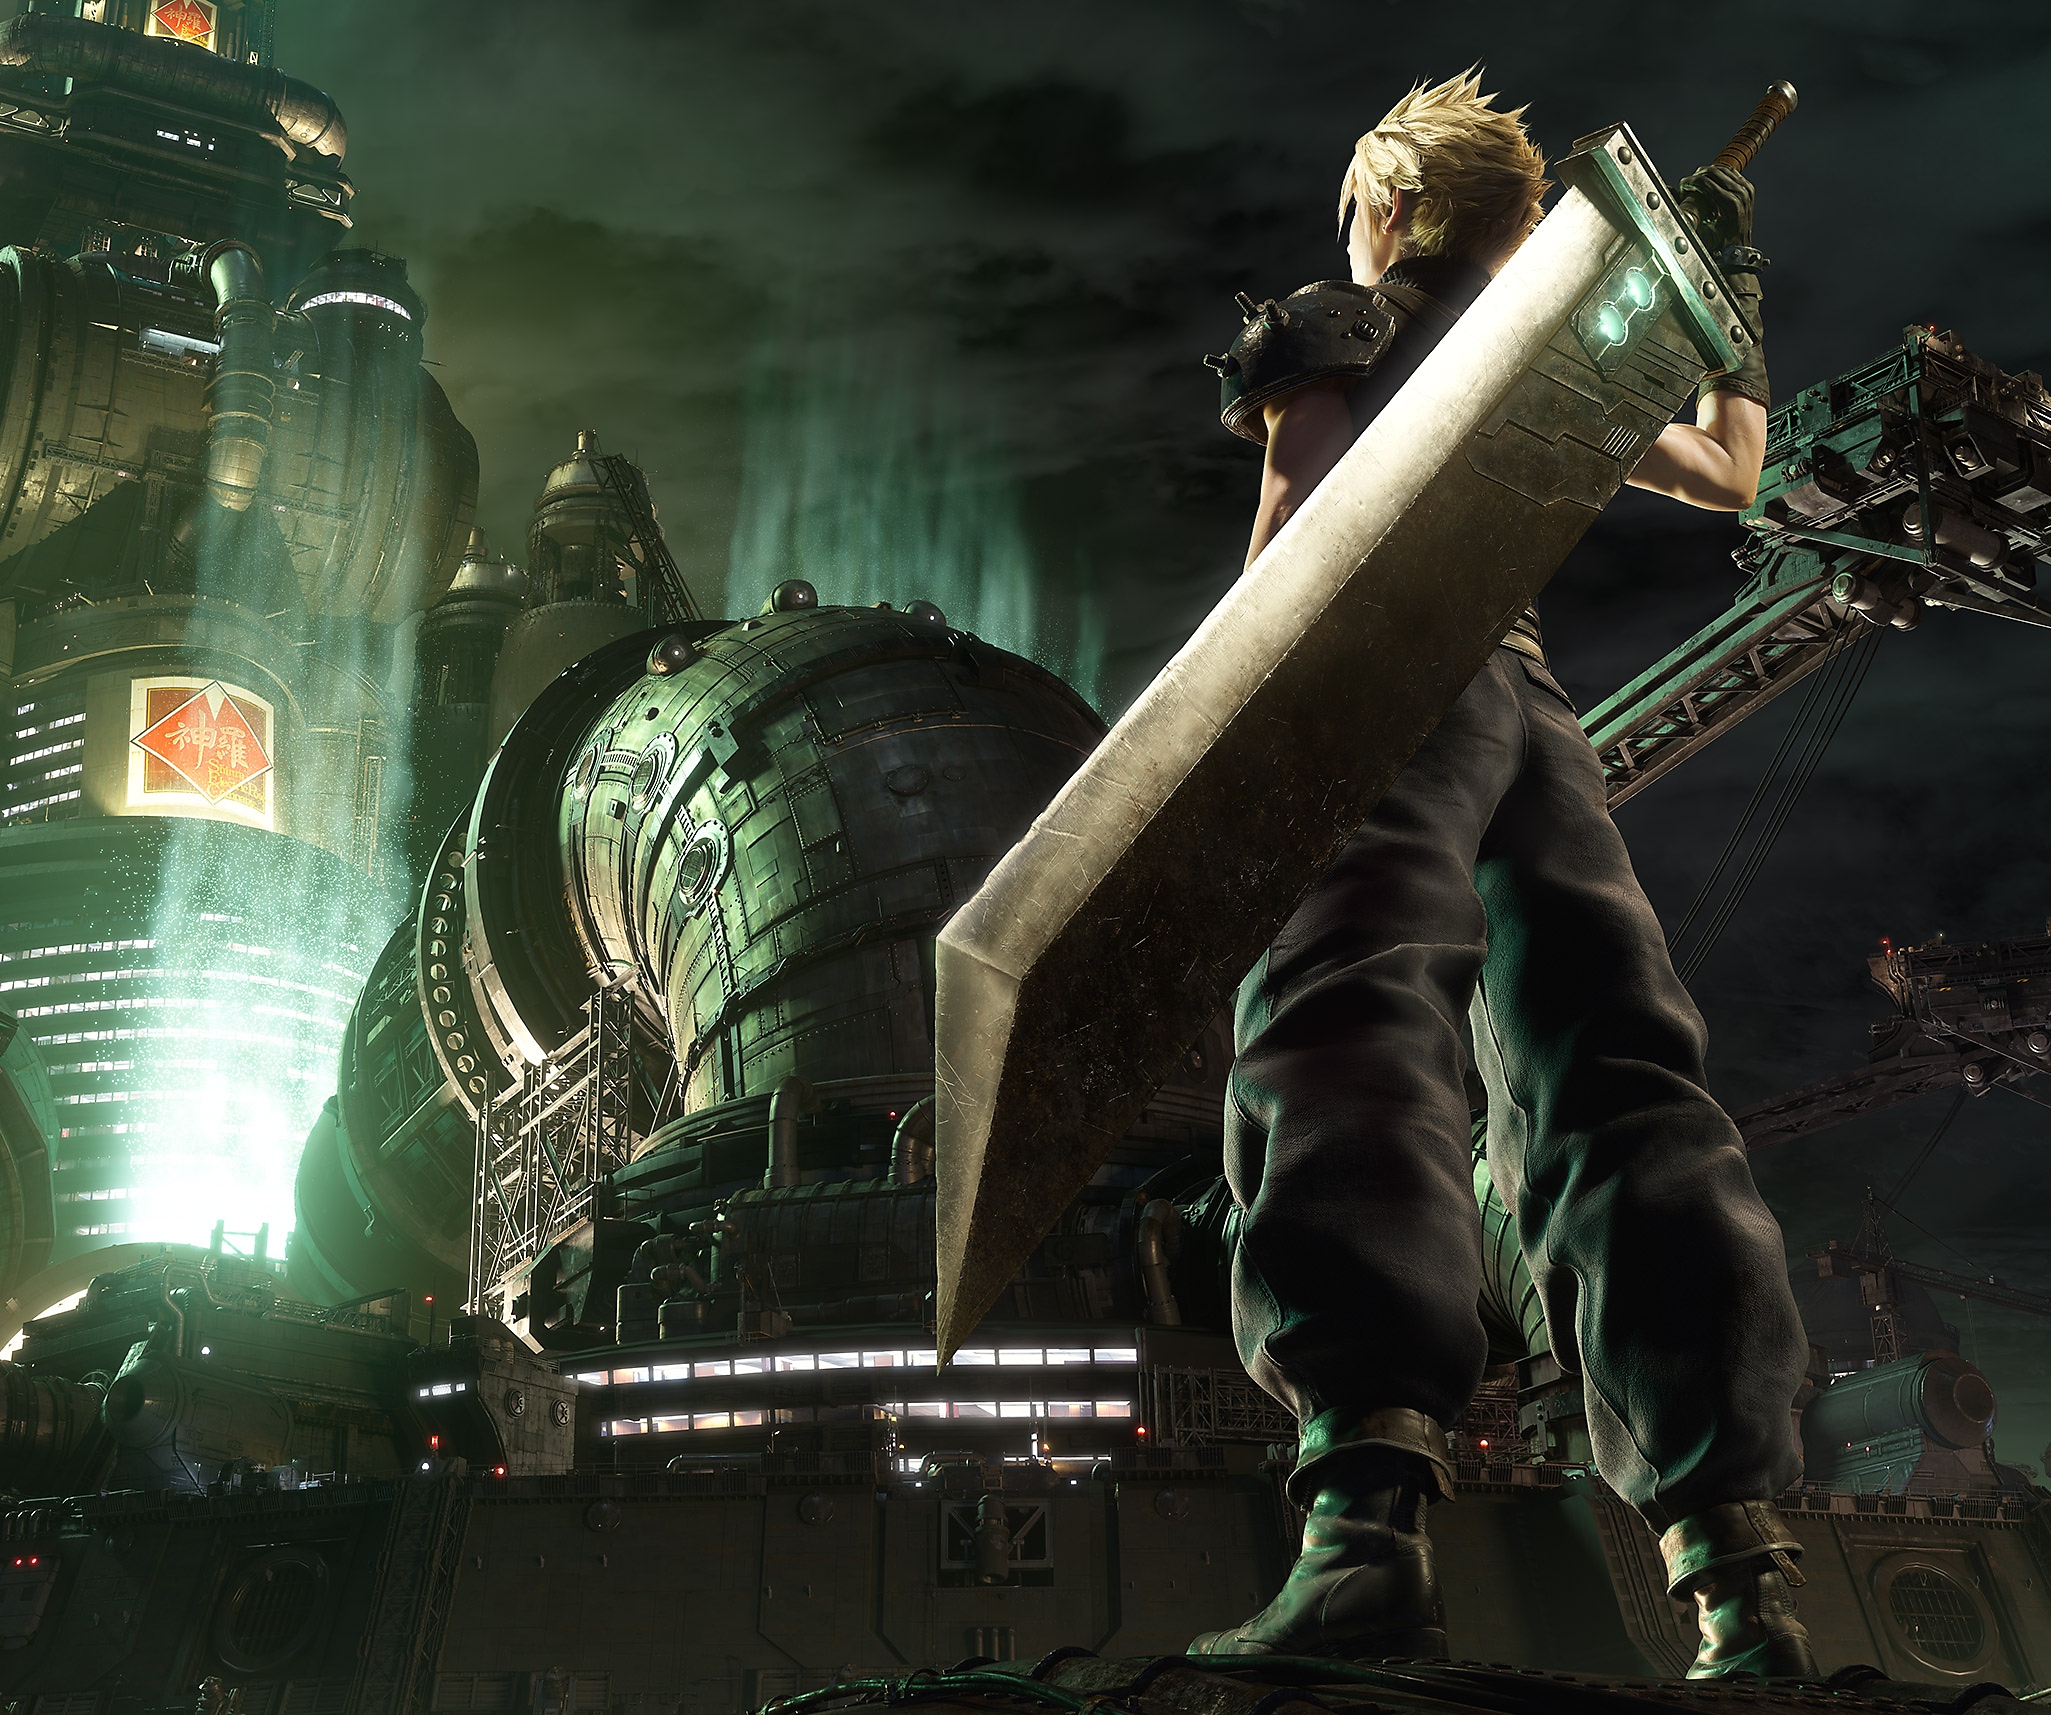 صورة فنية أساسية من Final Fantasy VII Remake تظهر فيها الشخصية الرئيسية Cloud يقف أمام مقر قيادة Shinra.